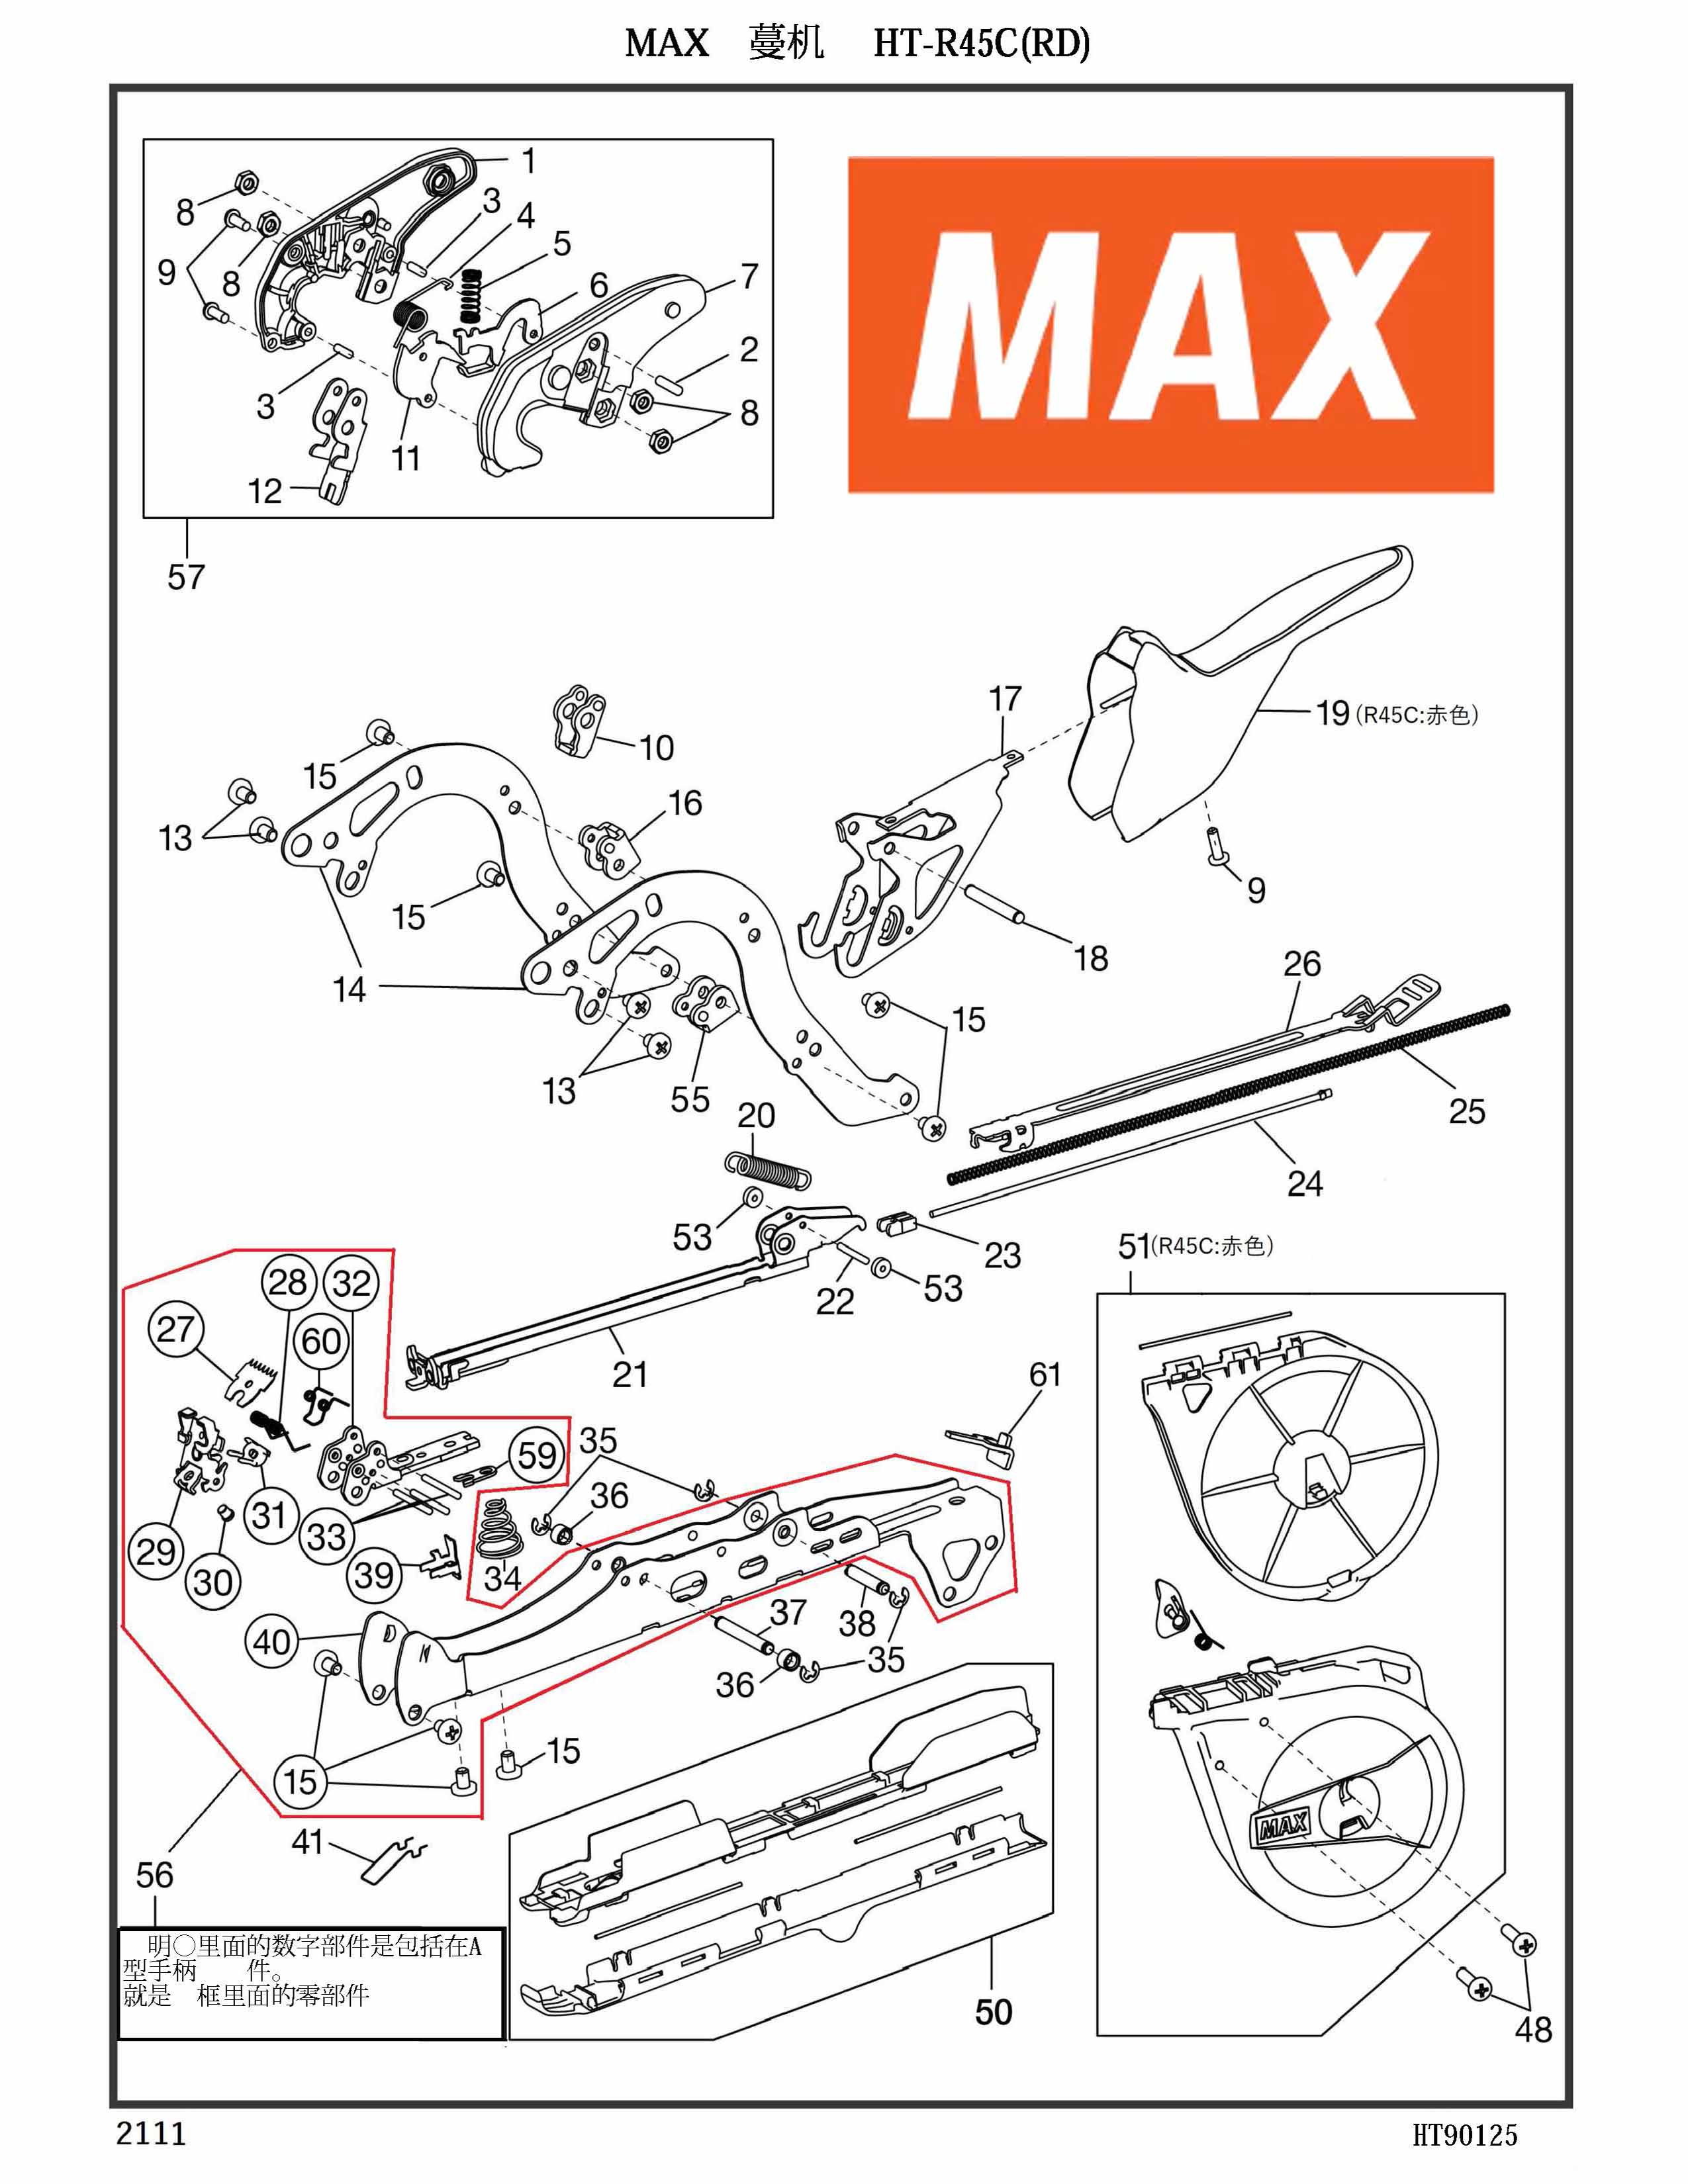 MAX Tapener Part HT81017 A HANDLE ASSY(R45C) Fits MAX HT-R45L(O) R45C(RD) #56